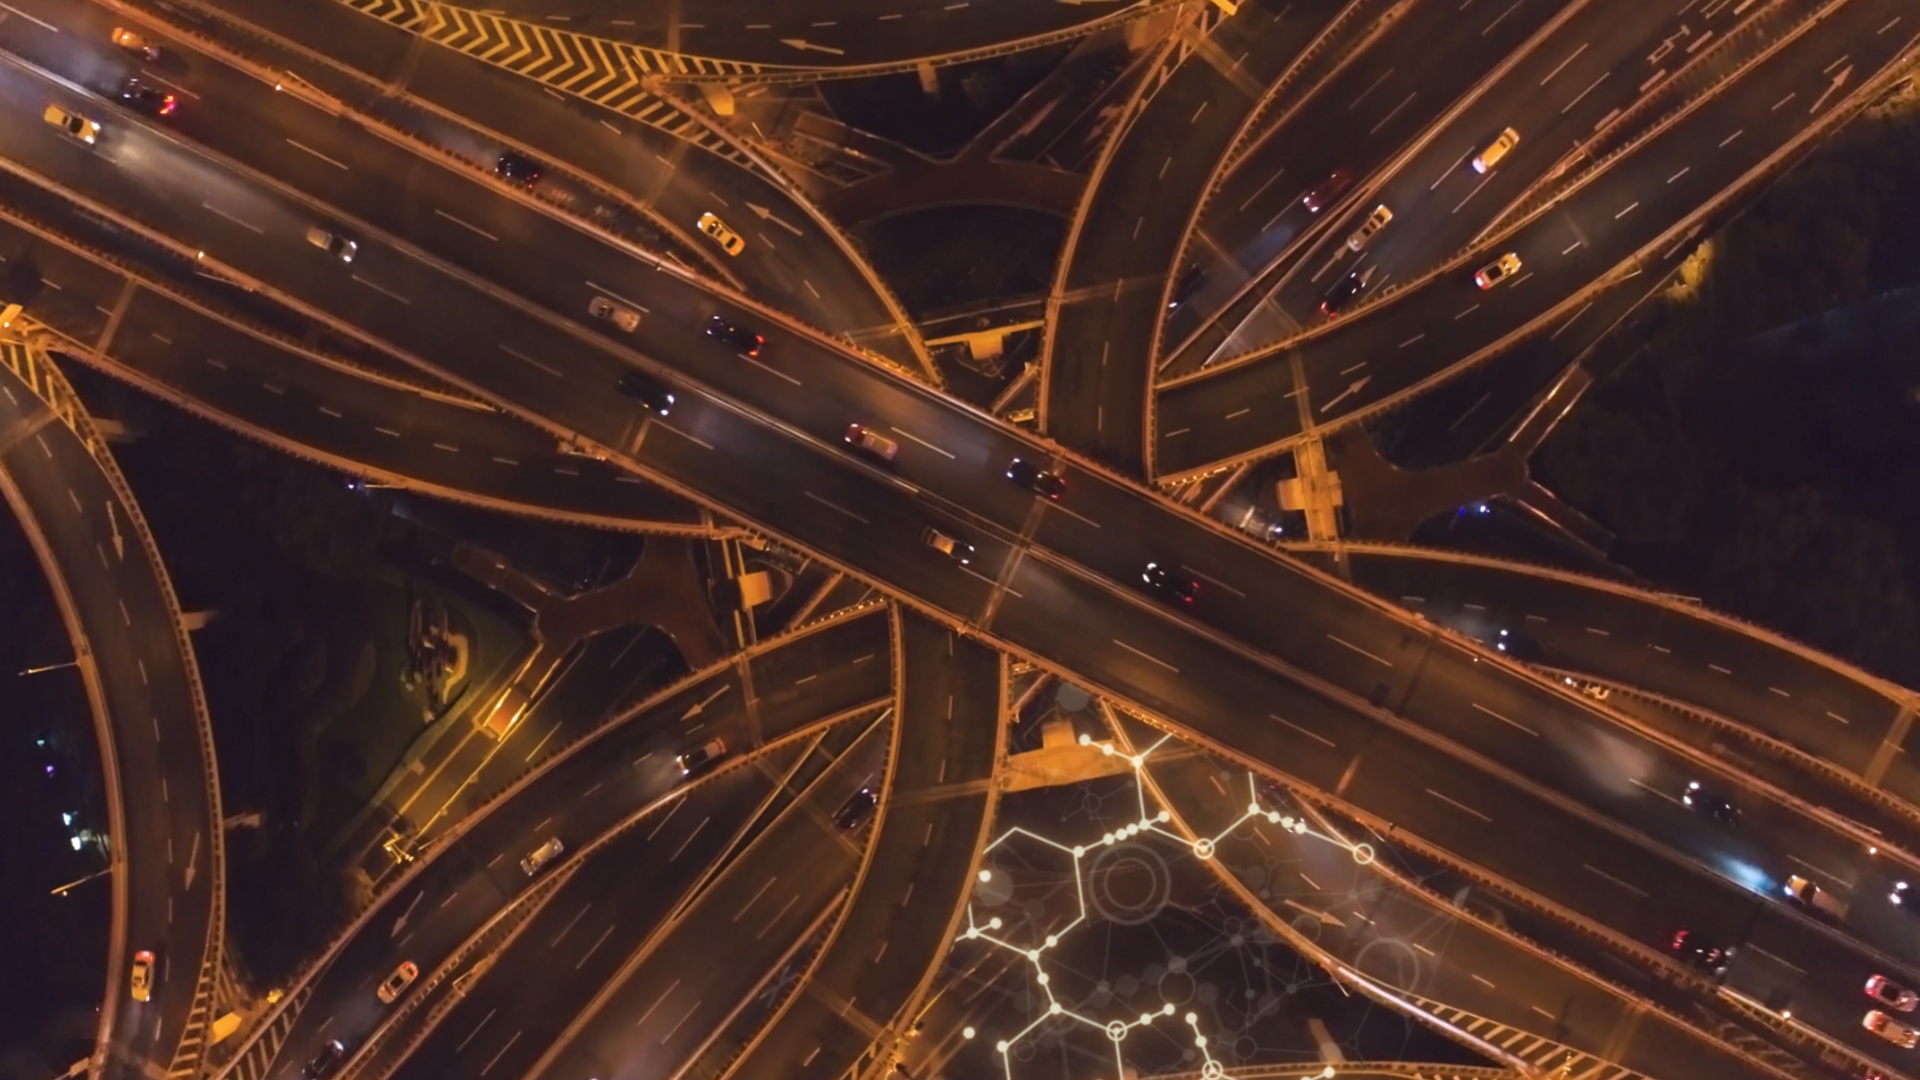 Aerial view of motorway